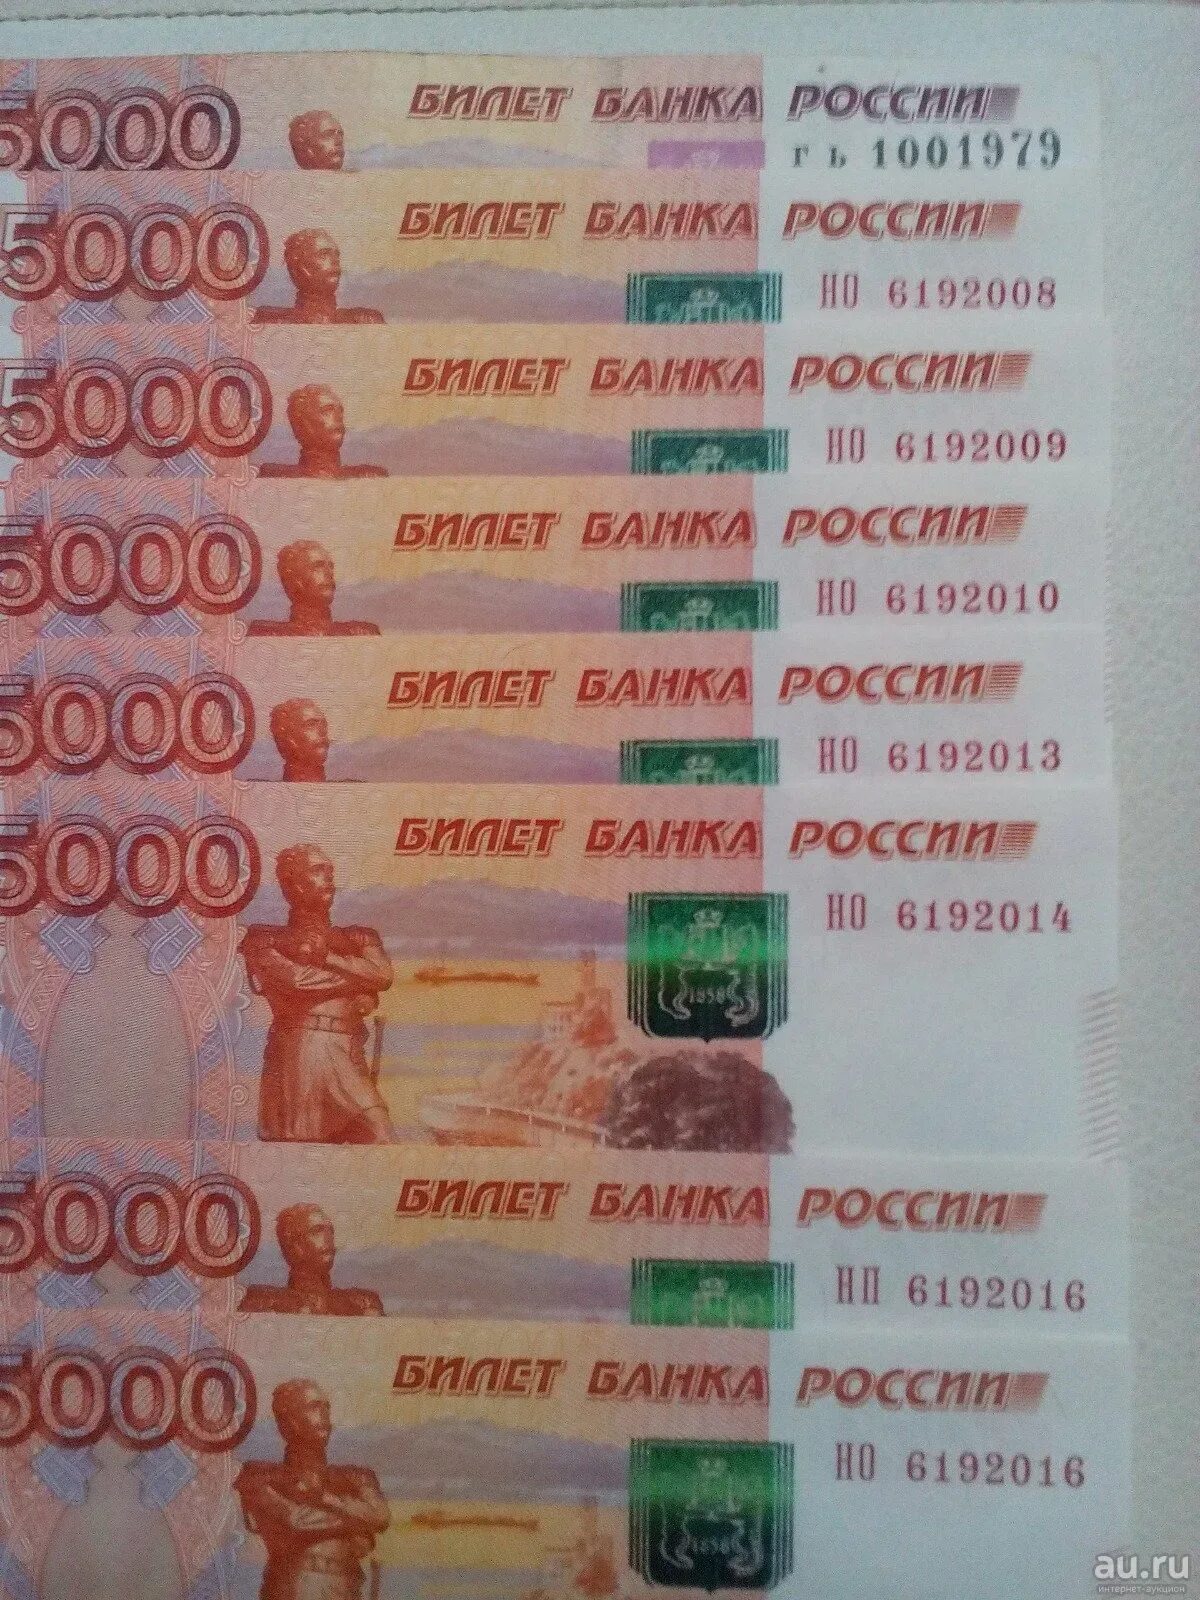 5000 Рублей. Купюра 5000. Банкнота 5000 рублей. Номинал 5000 рублей.